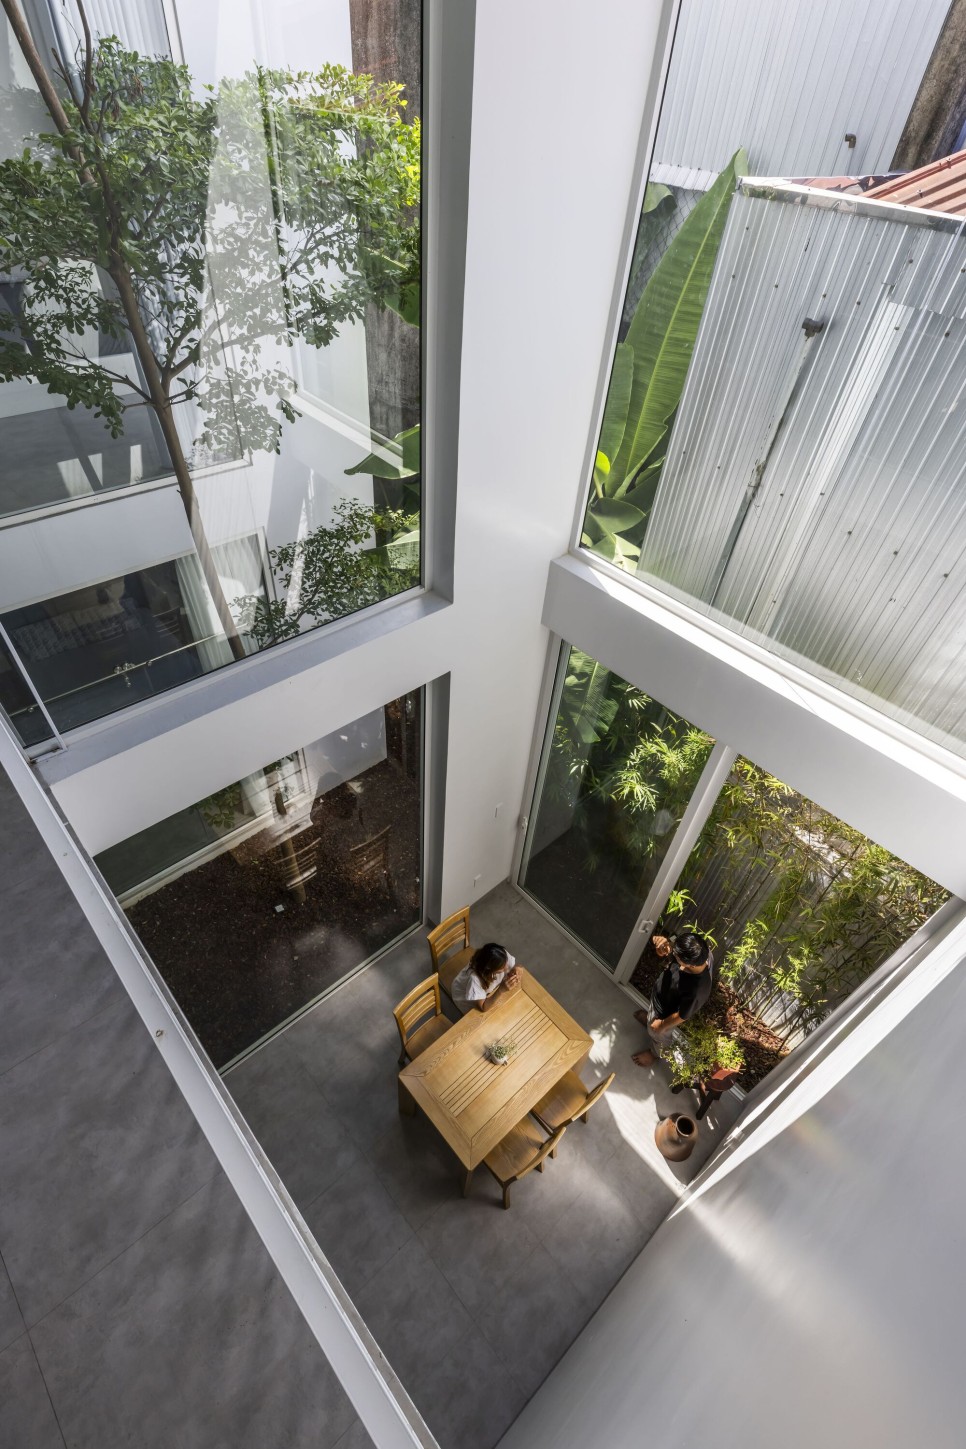 갤러리 겸 주거! 계곡을 끼고 살다. Nala House by Nguyen Khai Architects & Associates